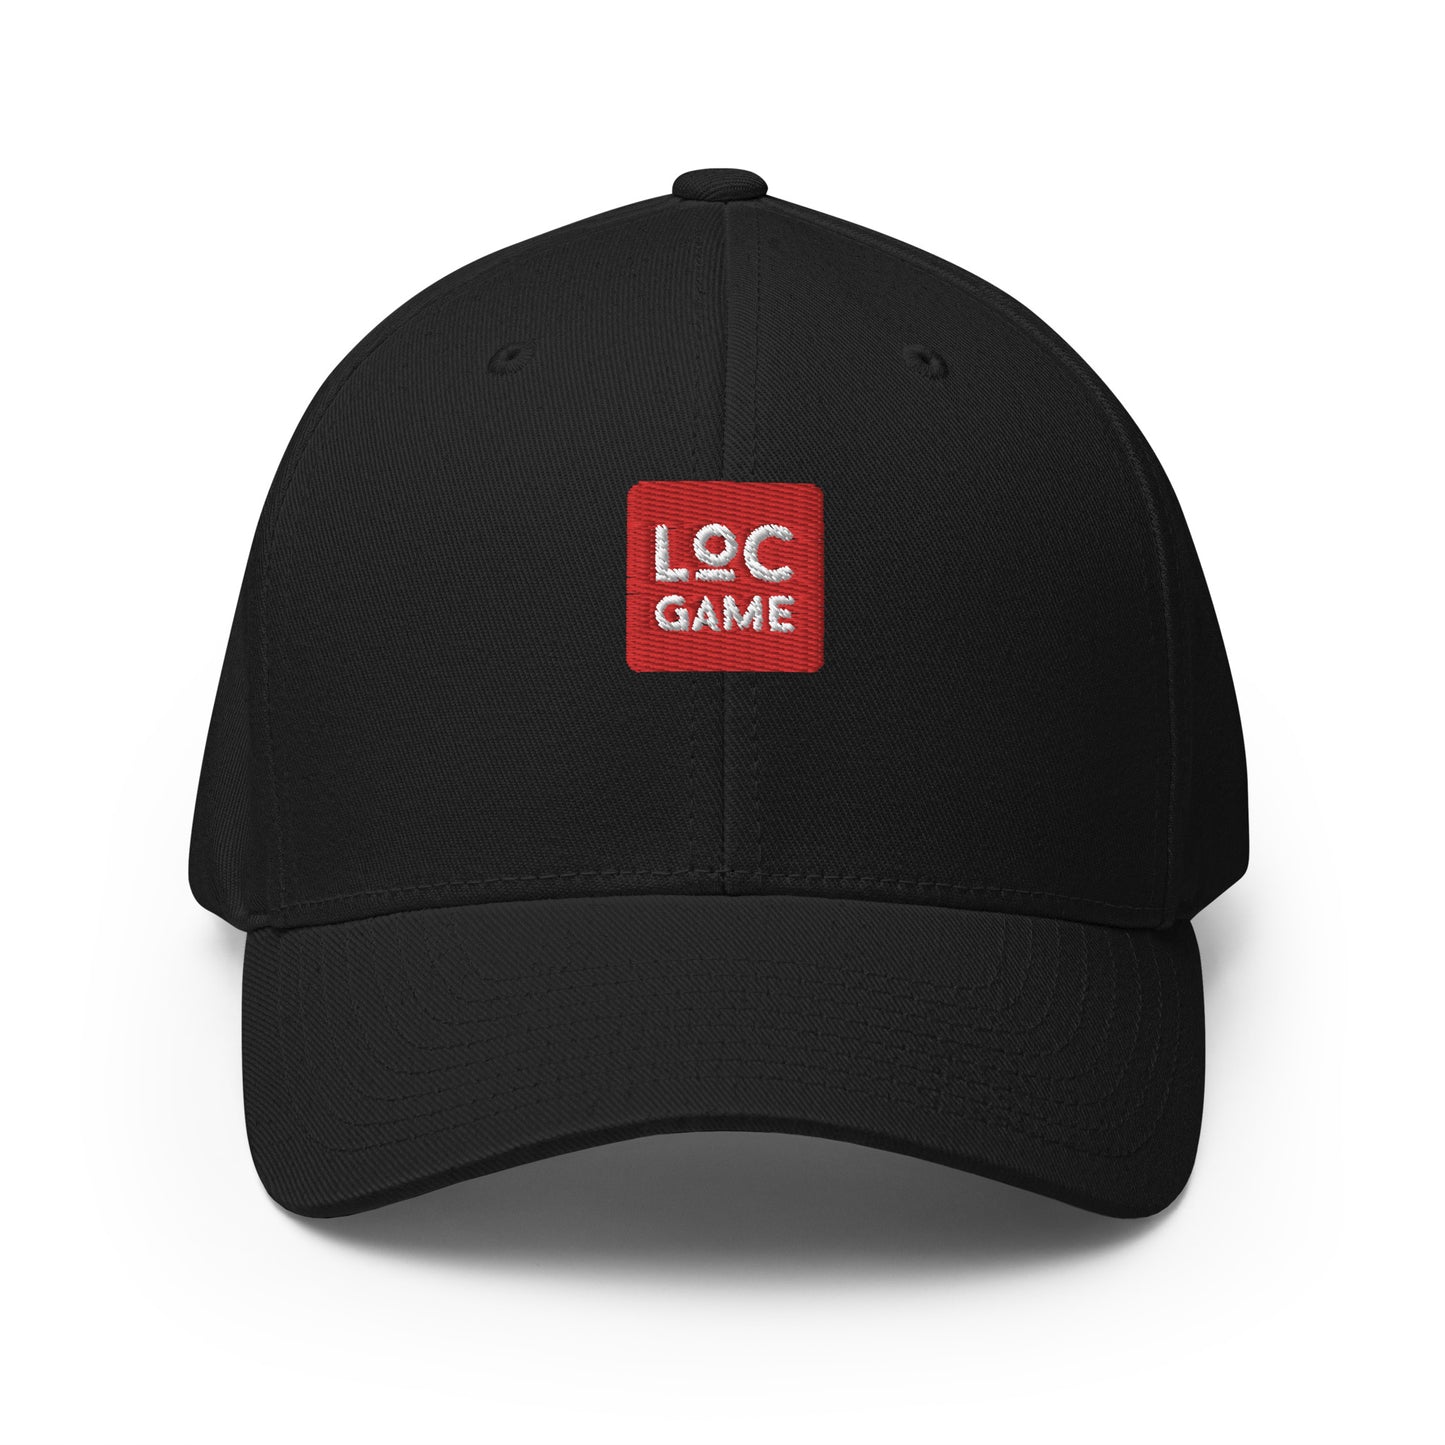 The OG LOCGame Cap